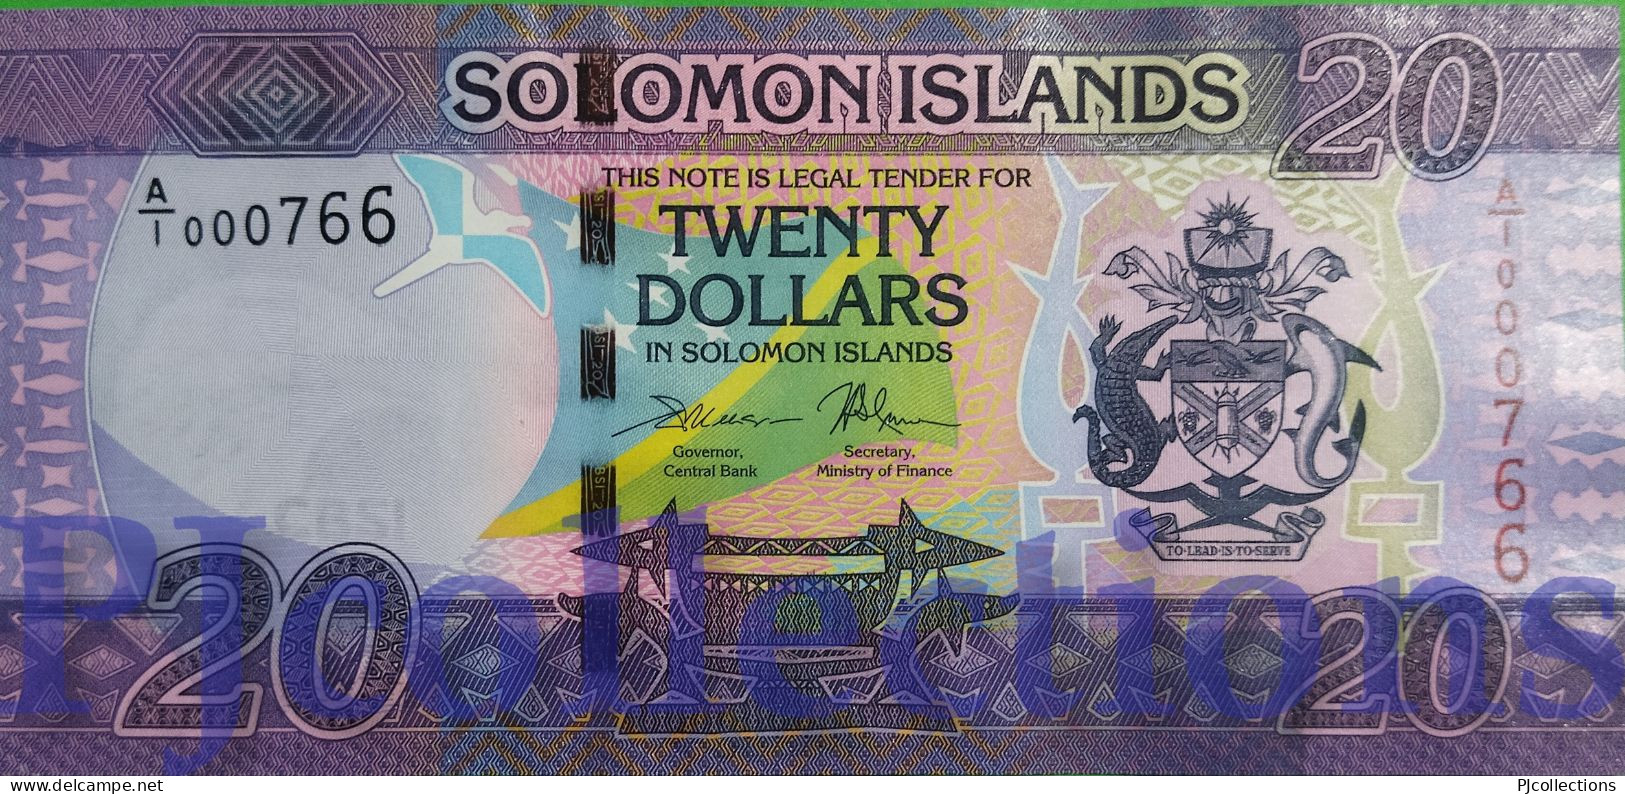 SOLOMON ISLANDS 20 DOLLARS 2017 PICK 34 UNC LOW SERIAL NUMBER "A/1 000766" - Solomonen